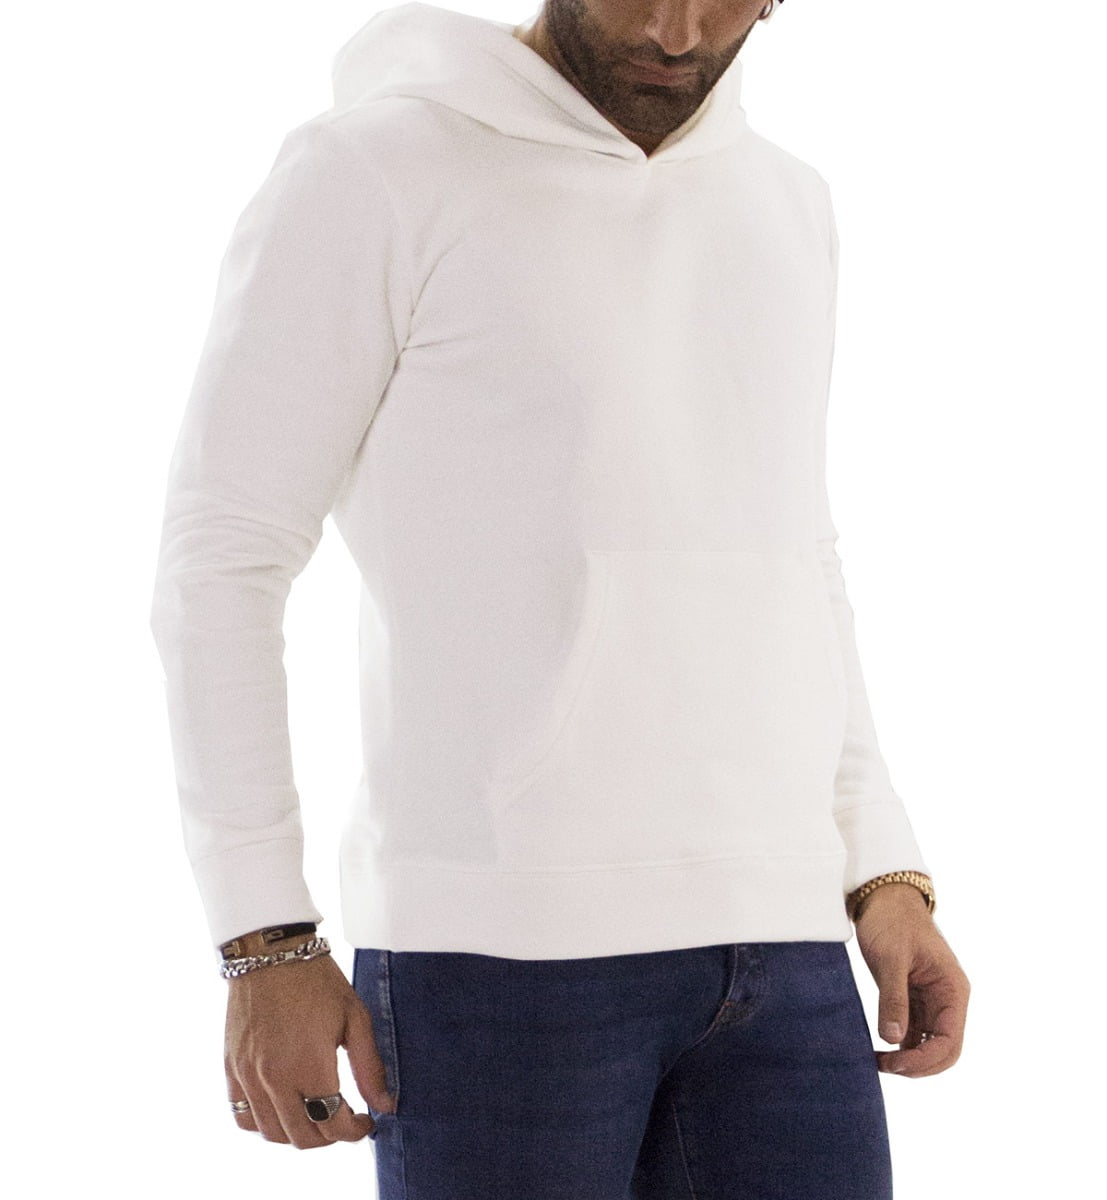 Felpa uomo bianca con cappuccio invernale con elastici ai polsi e fondo elasticizzata